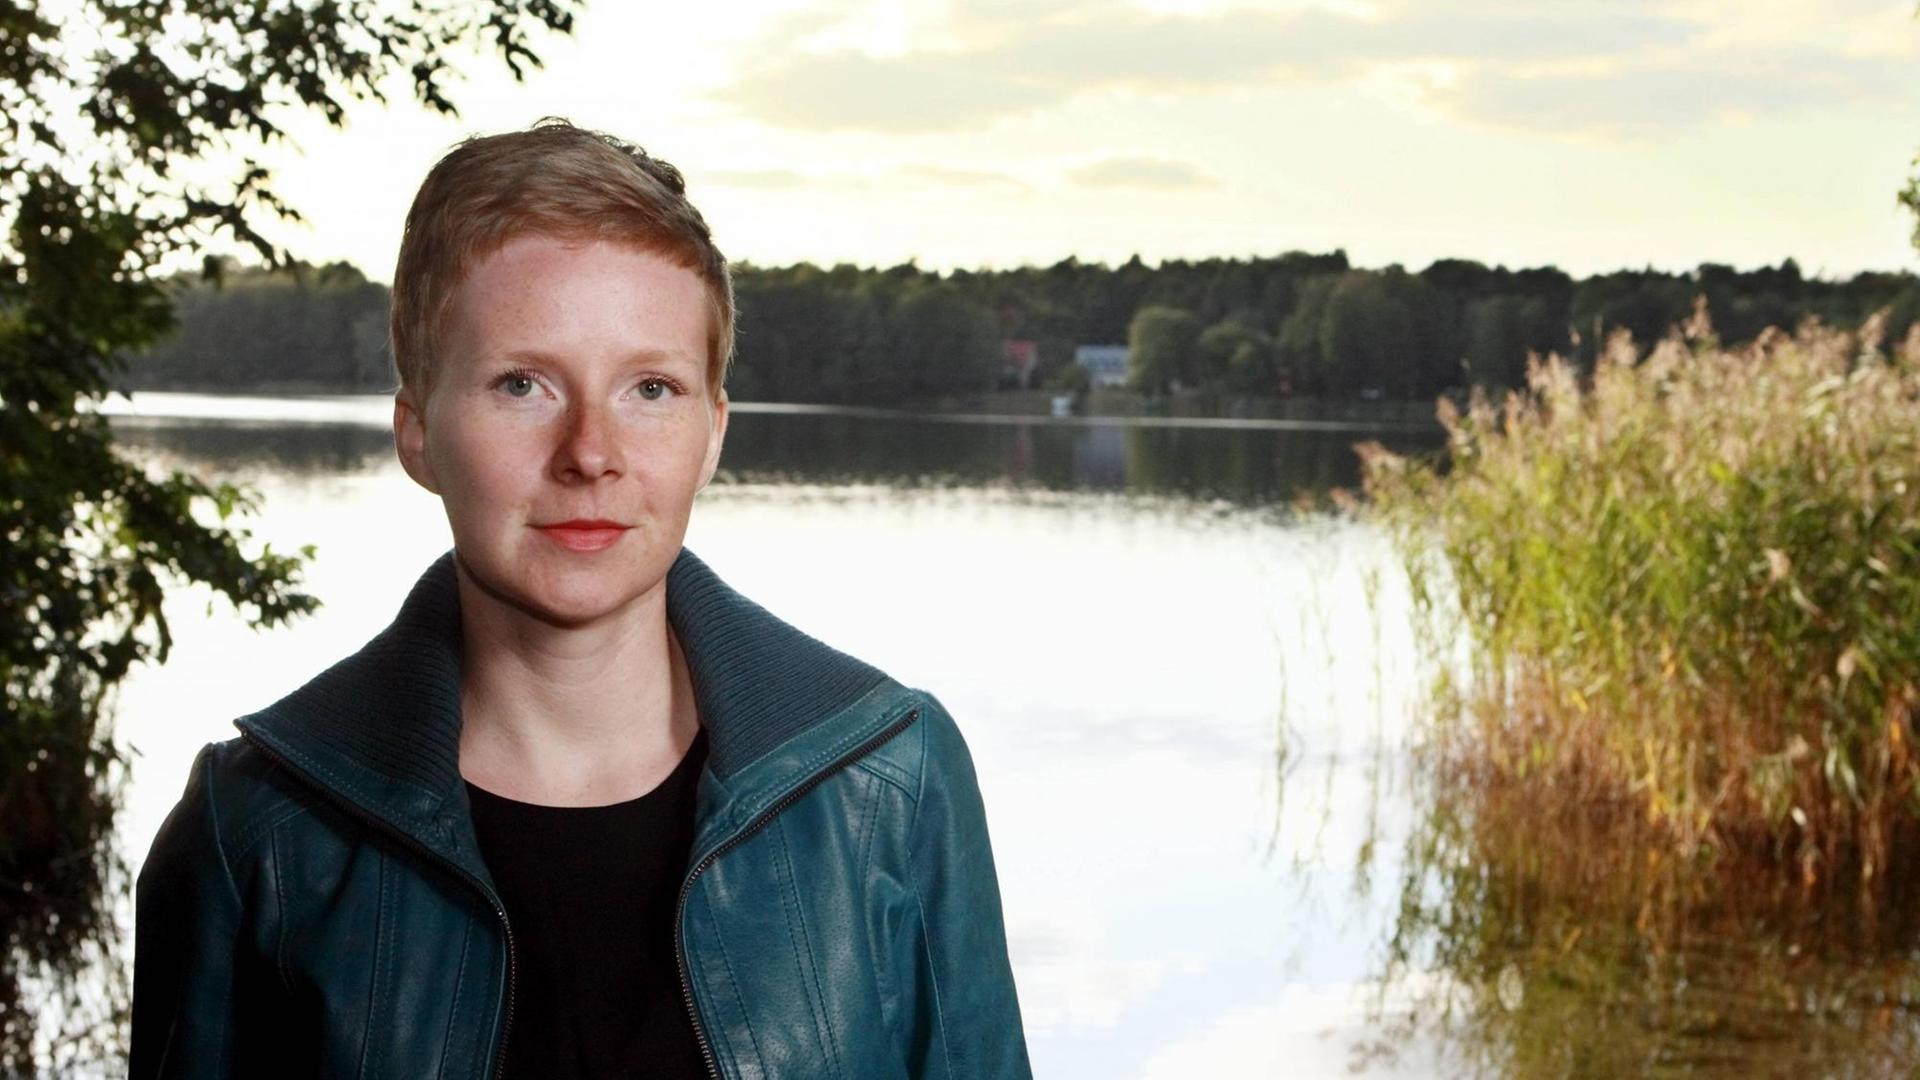 Die Autorin Judith Zander sitzt vor einem See und schaut in die Kamera.